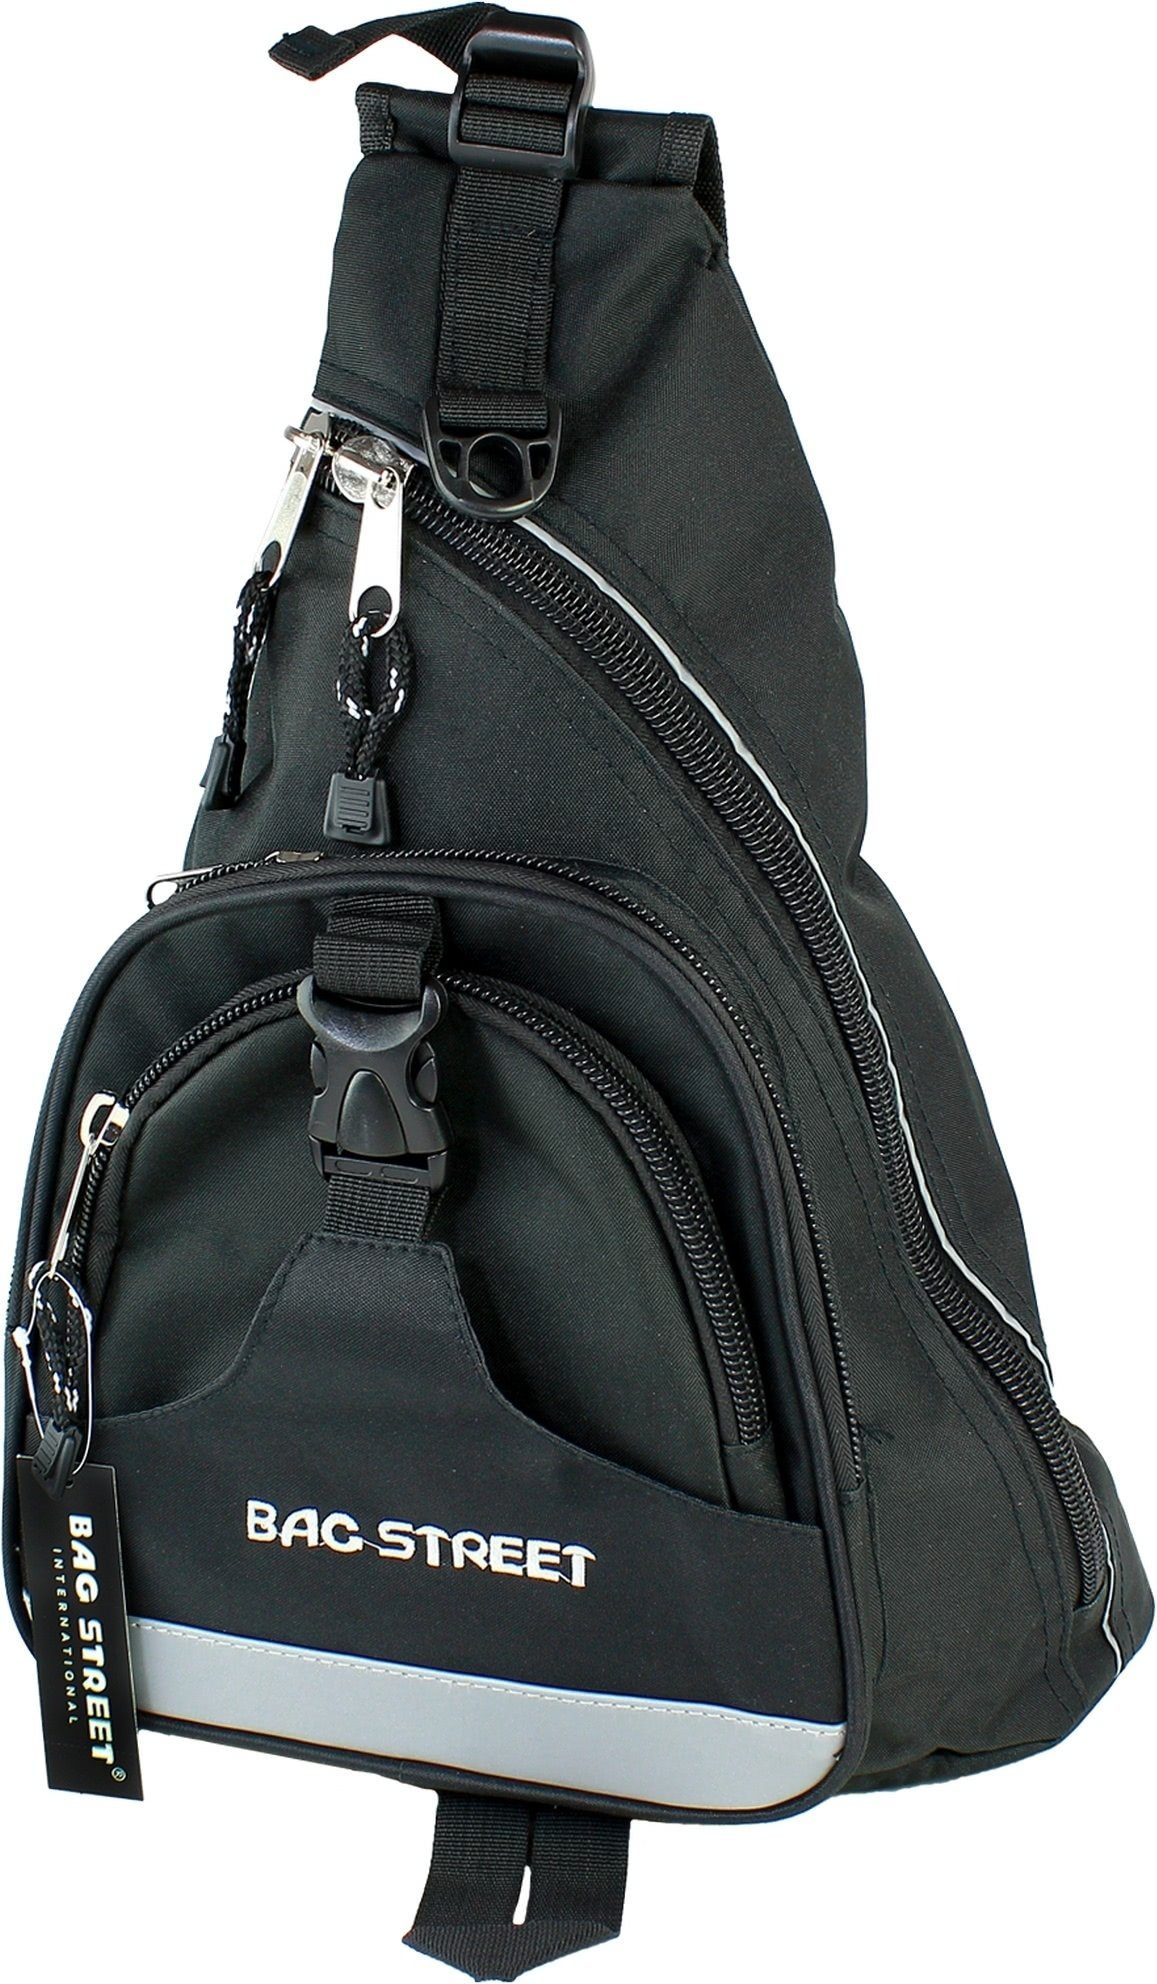 Jugend OTJ6570S Bag Street Bodybag Nylon schwarz Eingurt-Rucksack Herren 